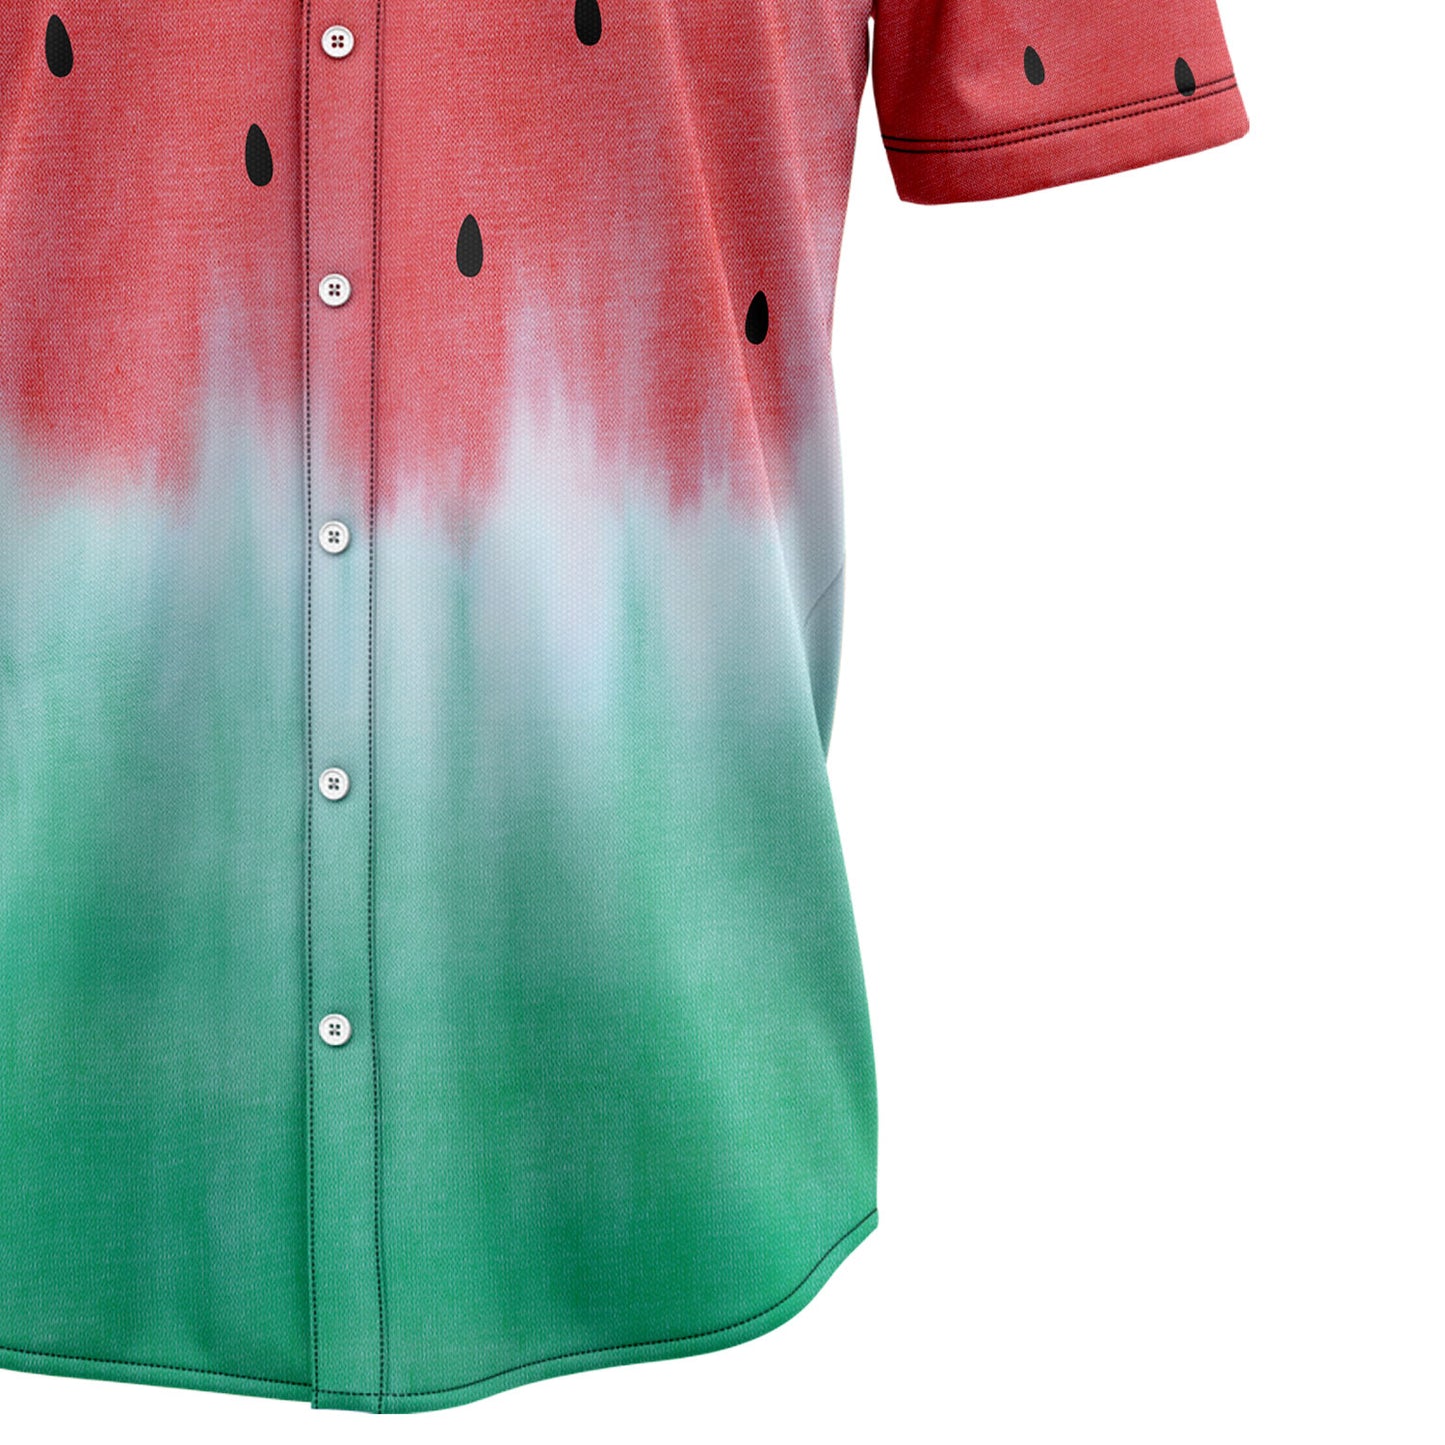 Watermelon H7828 Hawaiian Shirt